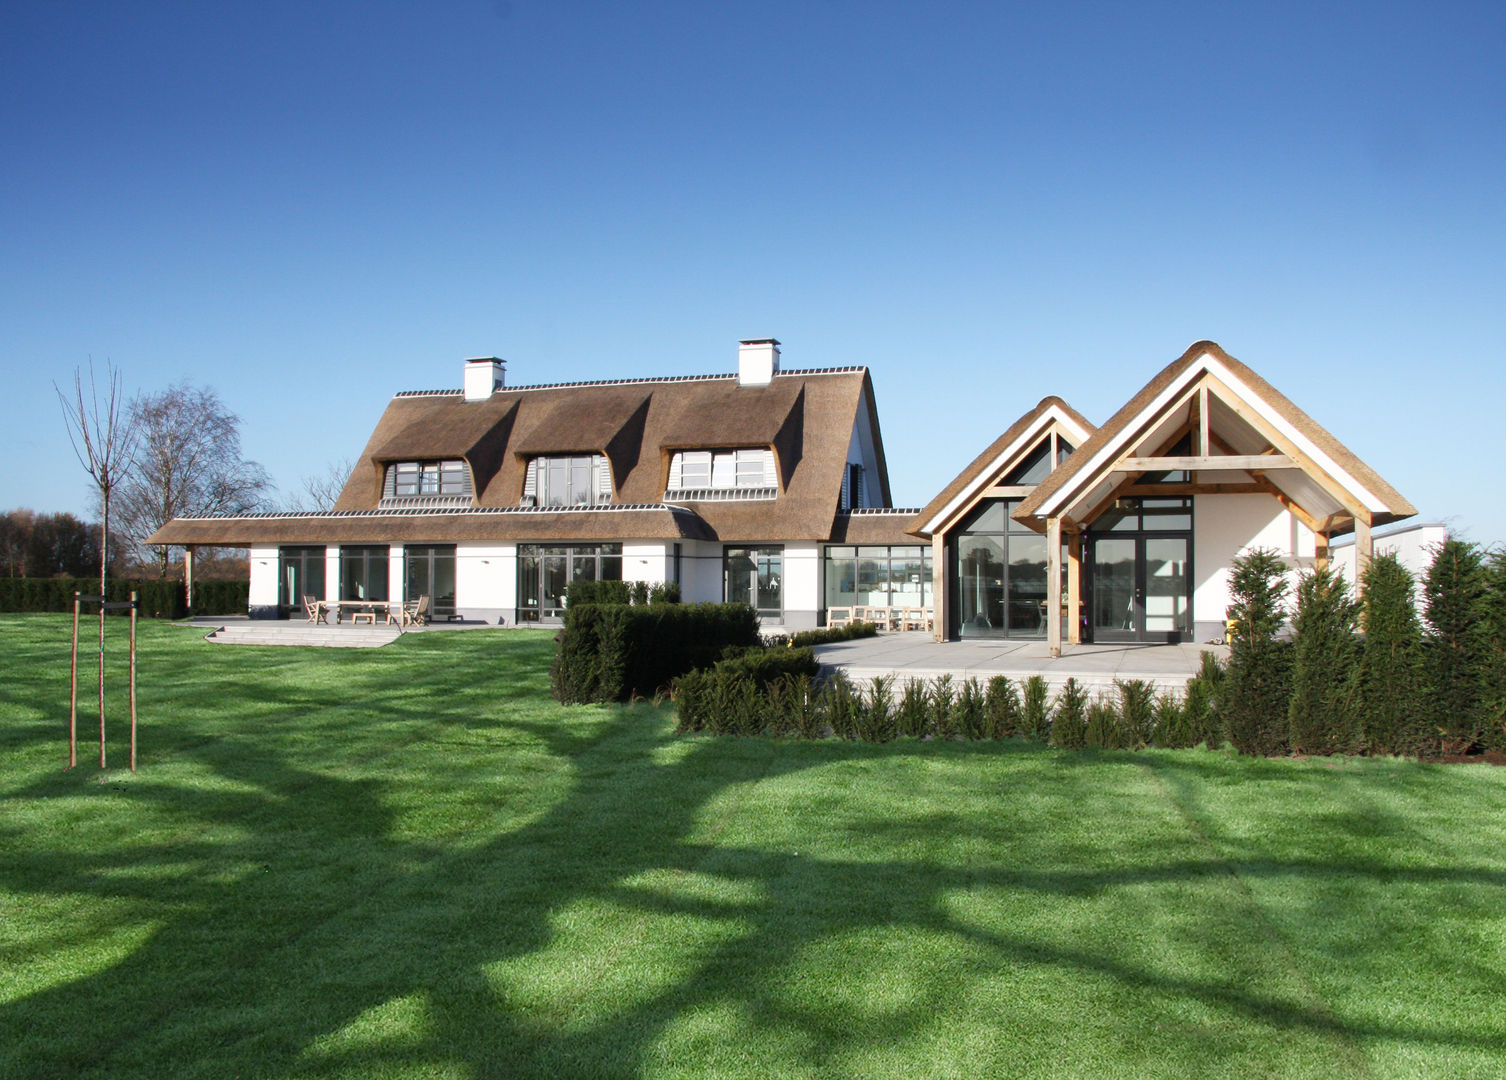 Witte villa met rieten dak, Arend Groenewegen Architect BNA Arend Groenewegen Architect BNA Country style houses